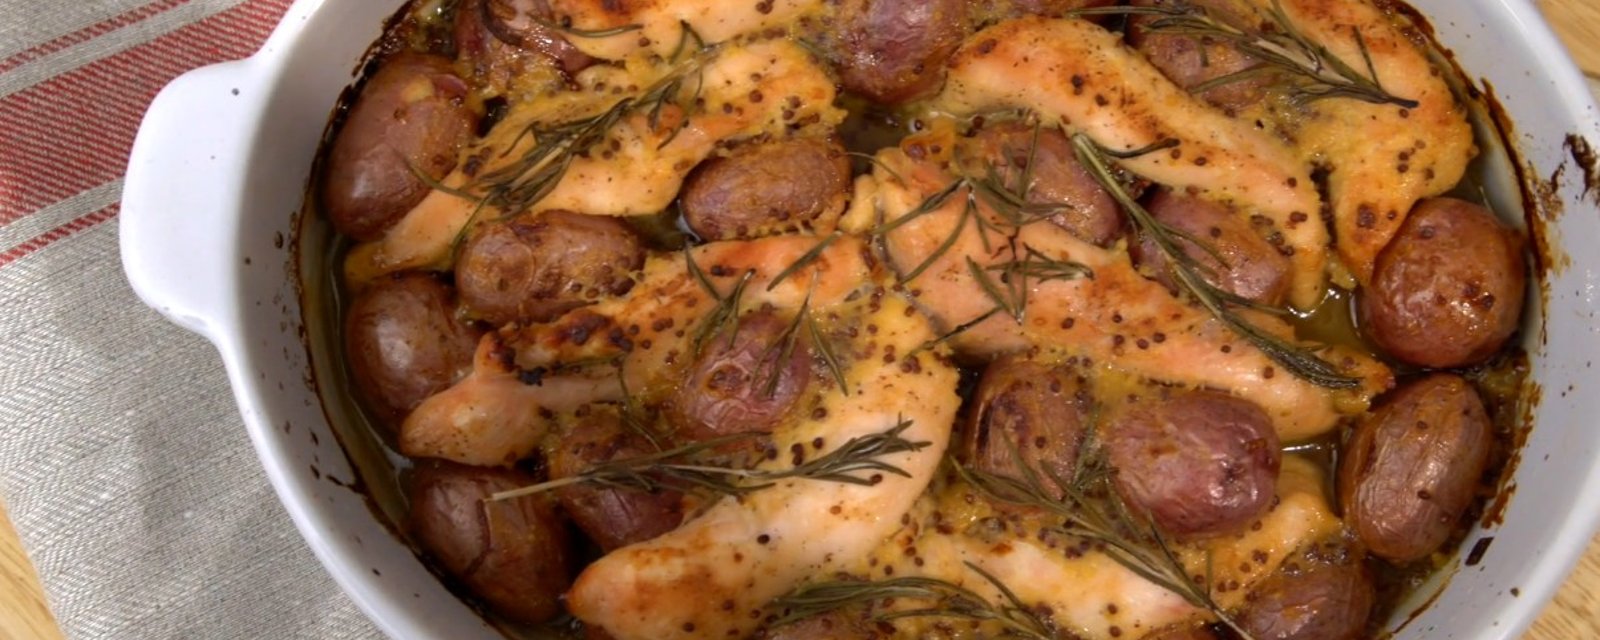 Un délice vous attend pour le souper : cette casserole de poulet, miel et moutarde est parfaite!